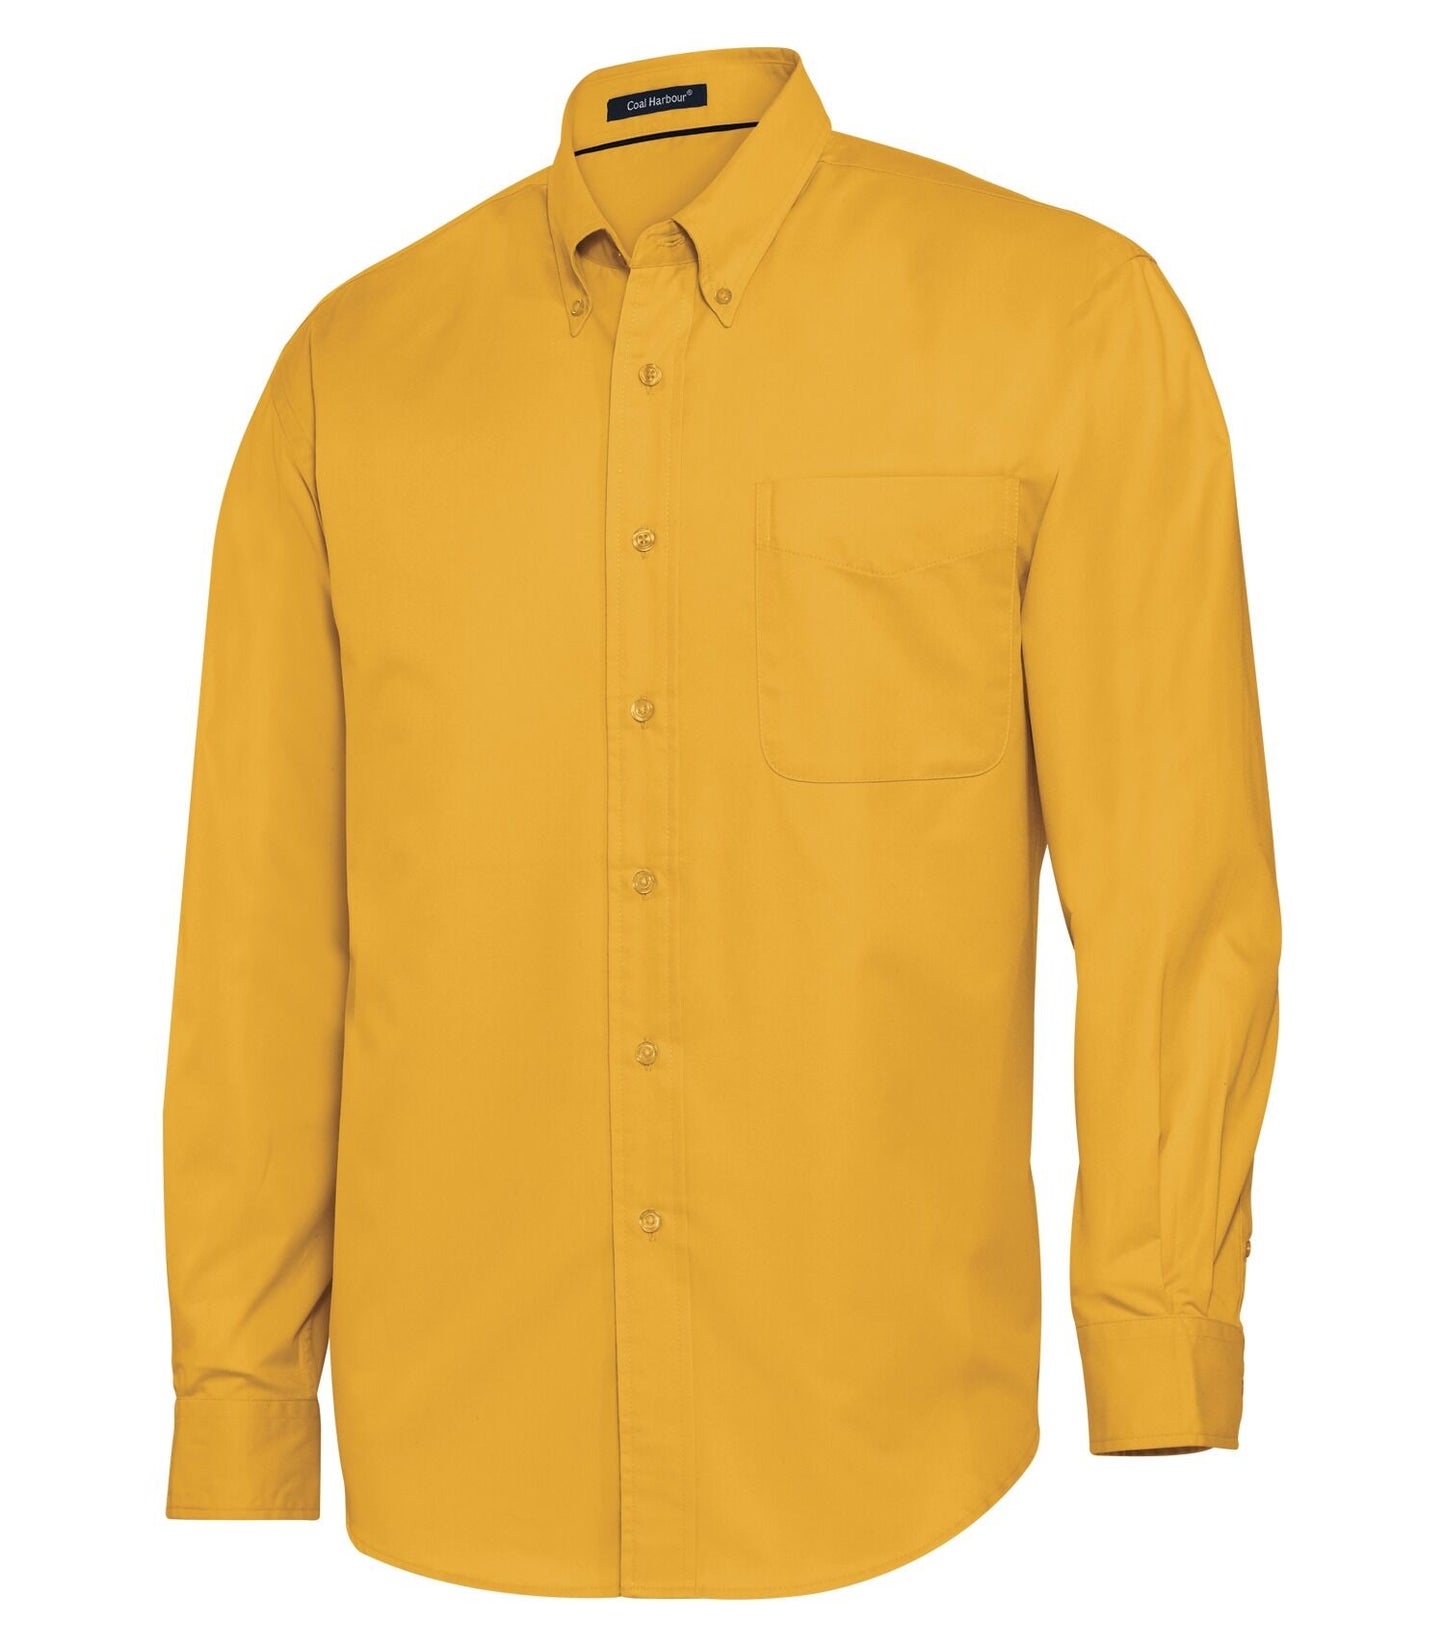 Coal harbour-D610 chemise tissée à manches longues easy care blend pour hommes